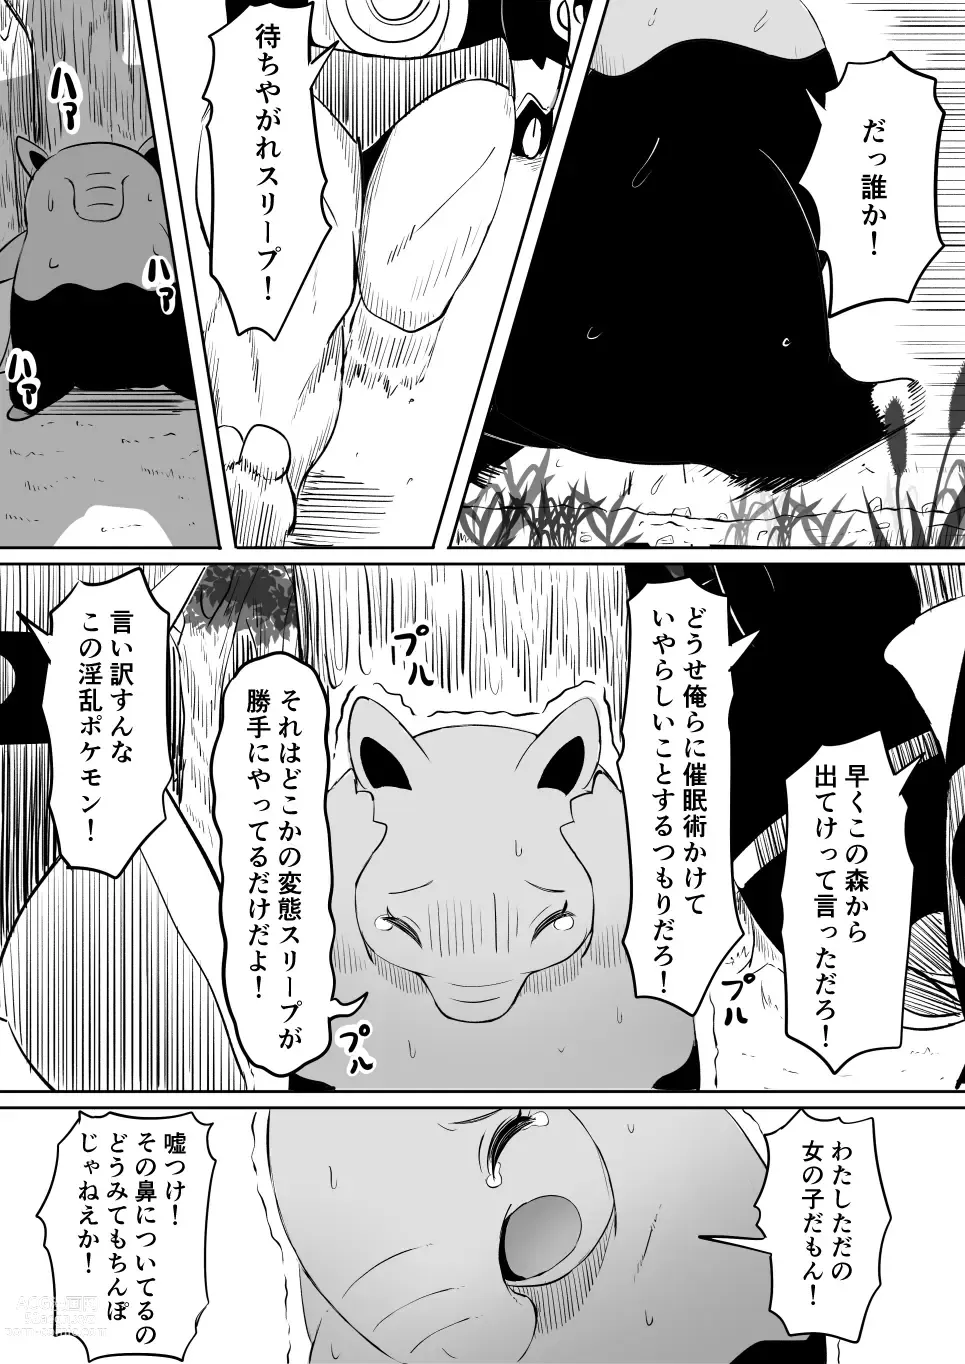 Page 2 of doujinshi Koi o Shita Sleeper-chan.